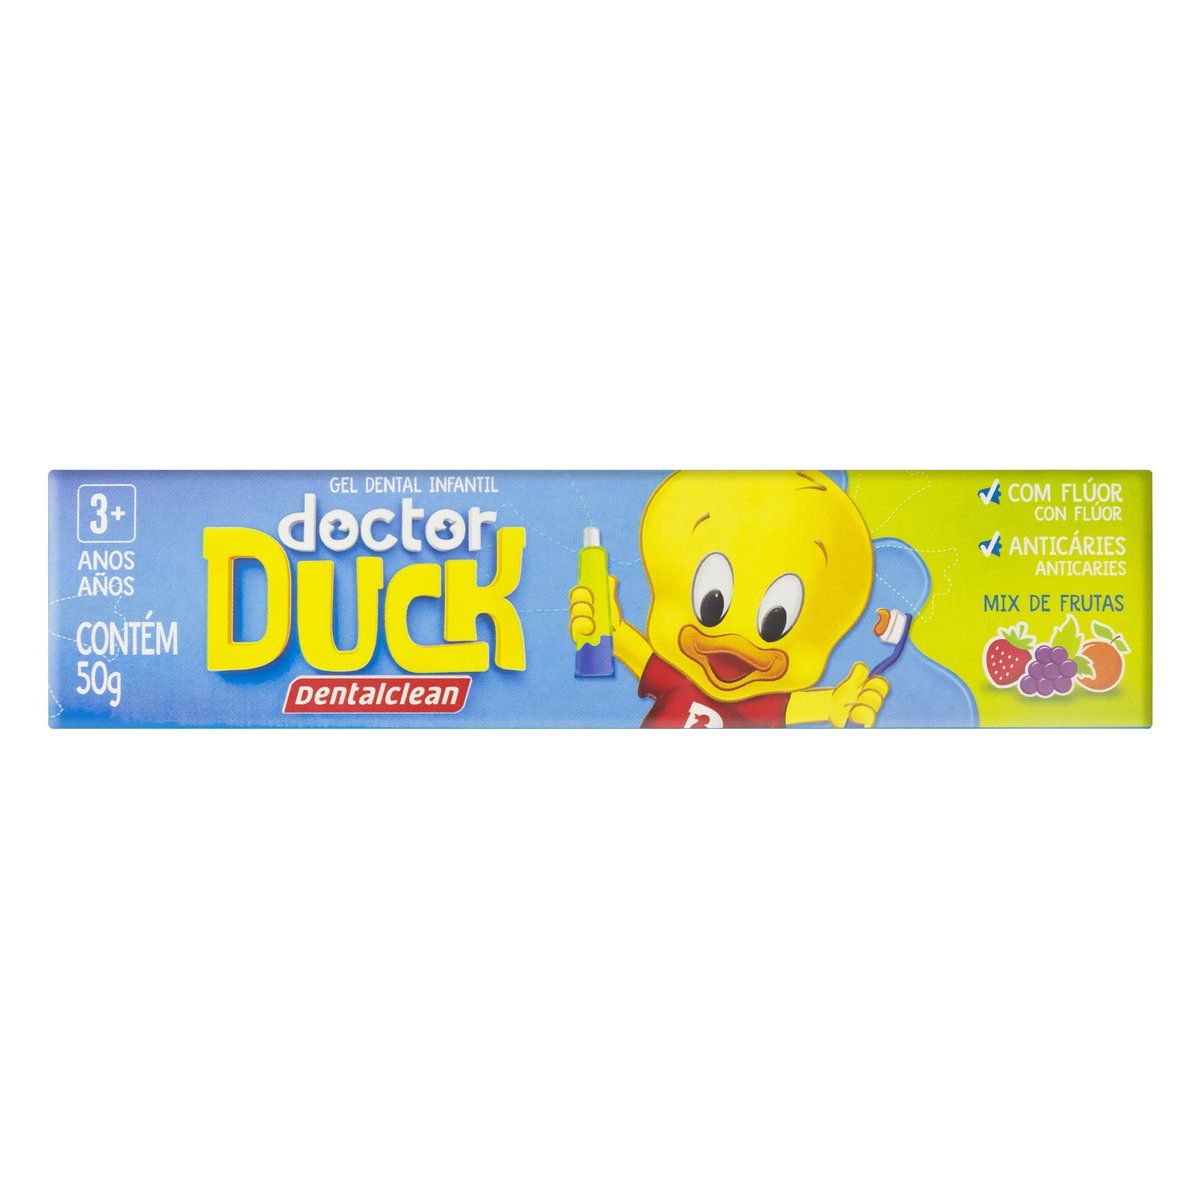 Gel Dental Infantil Dentalclean Doctor Duck com Flúor Mix de Frutas 50g